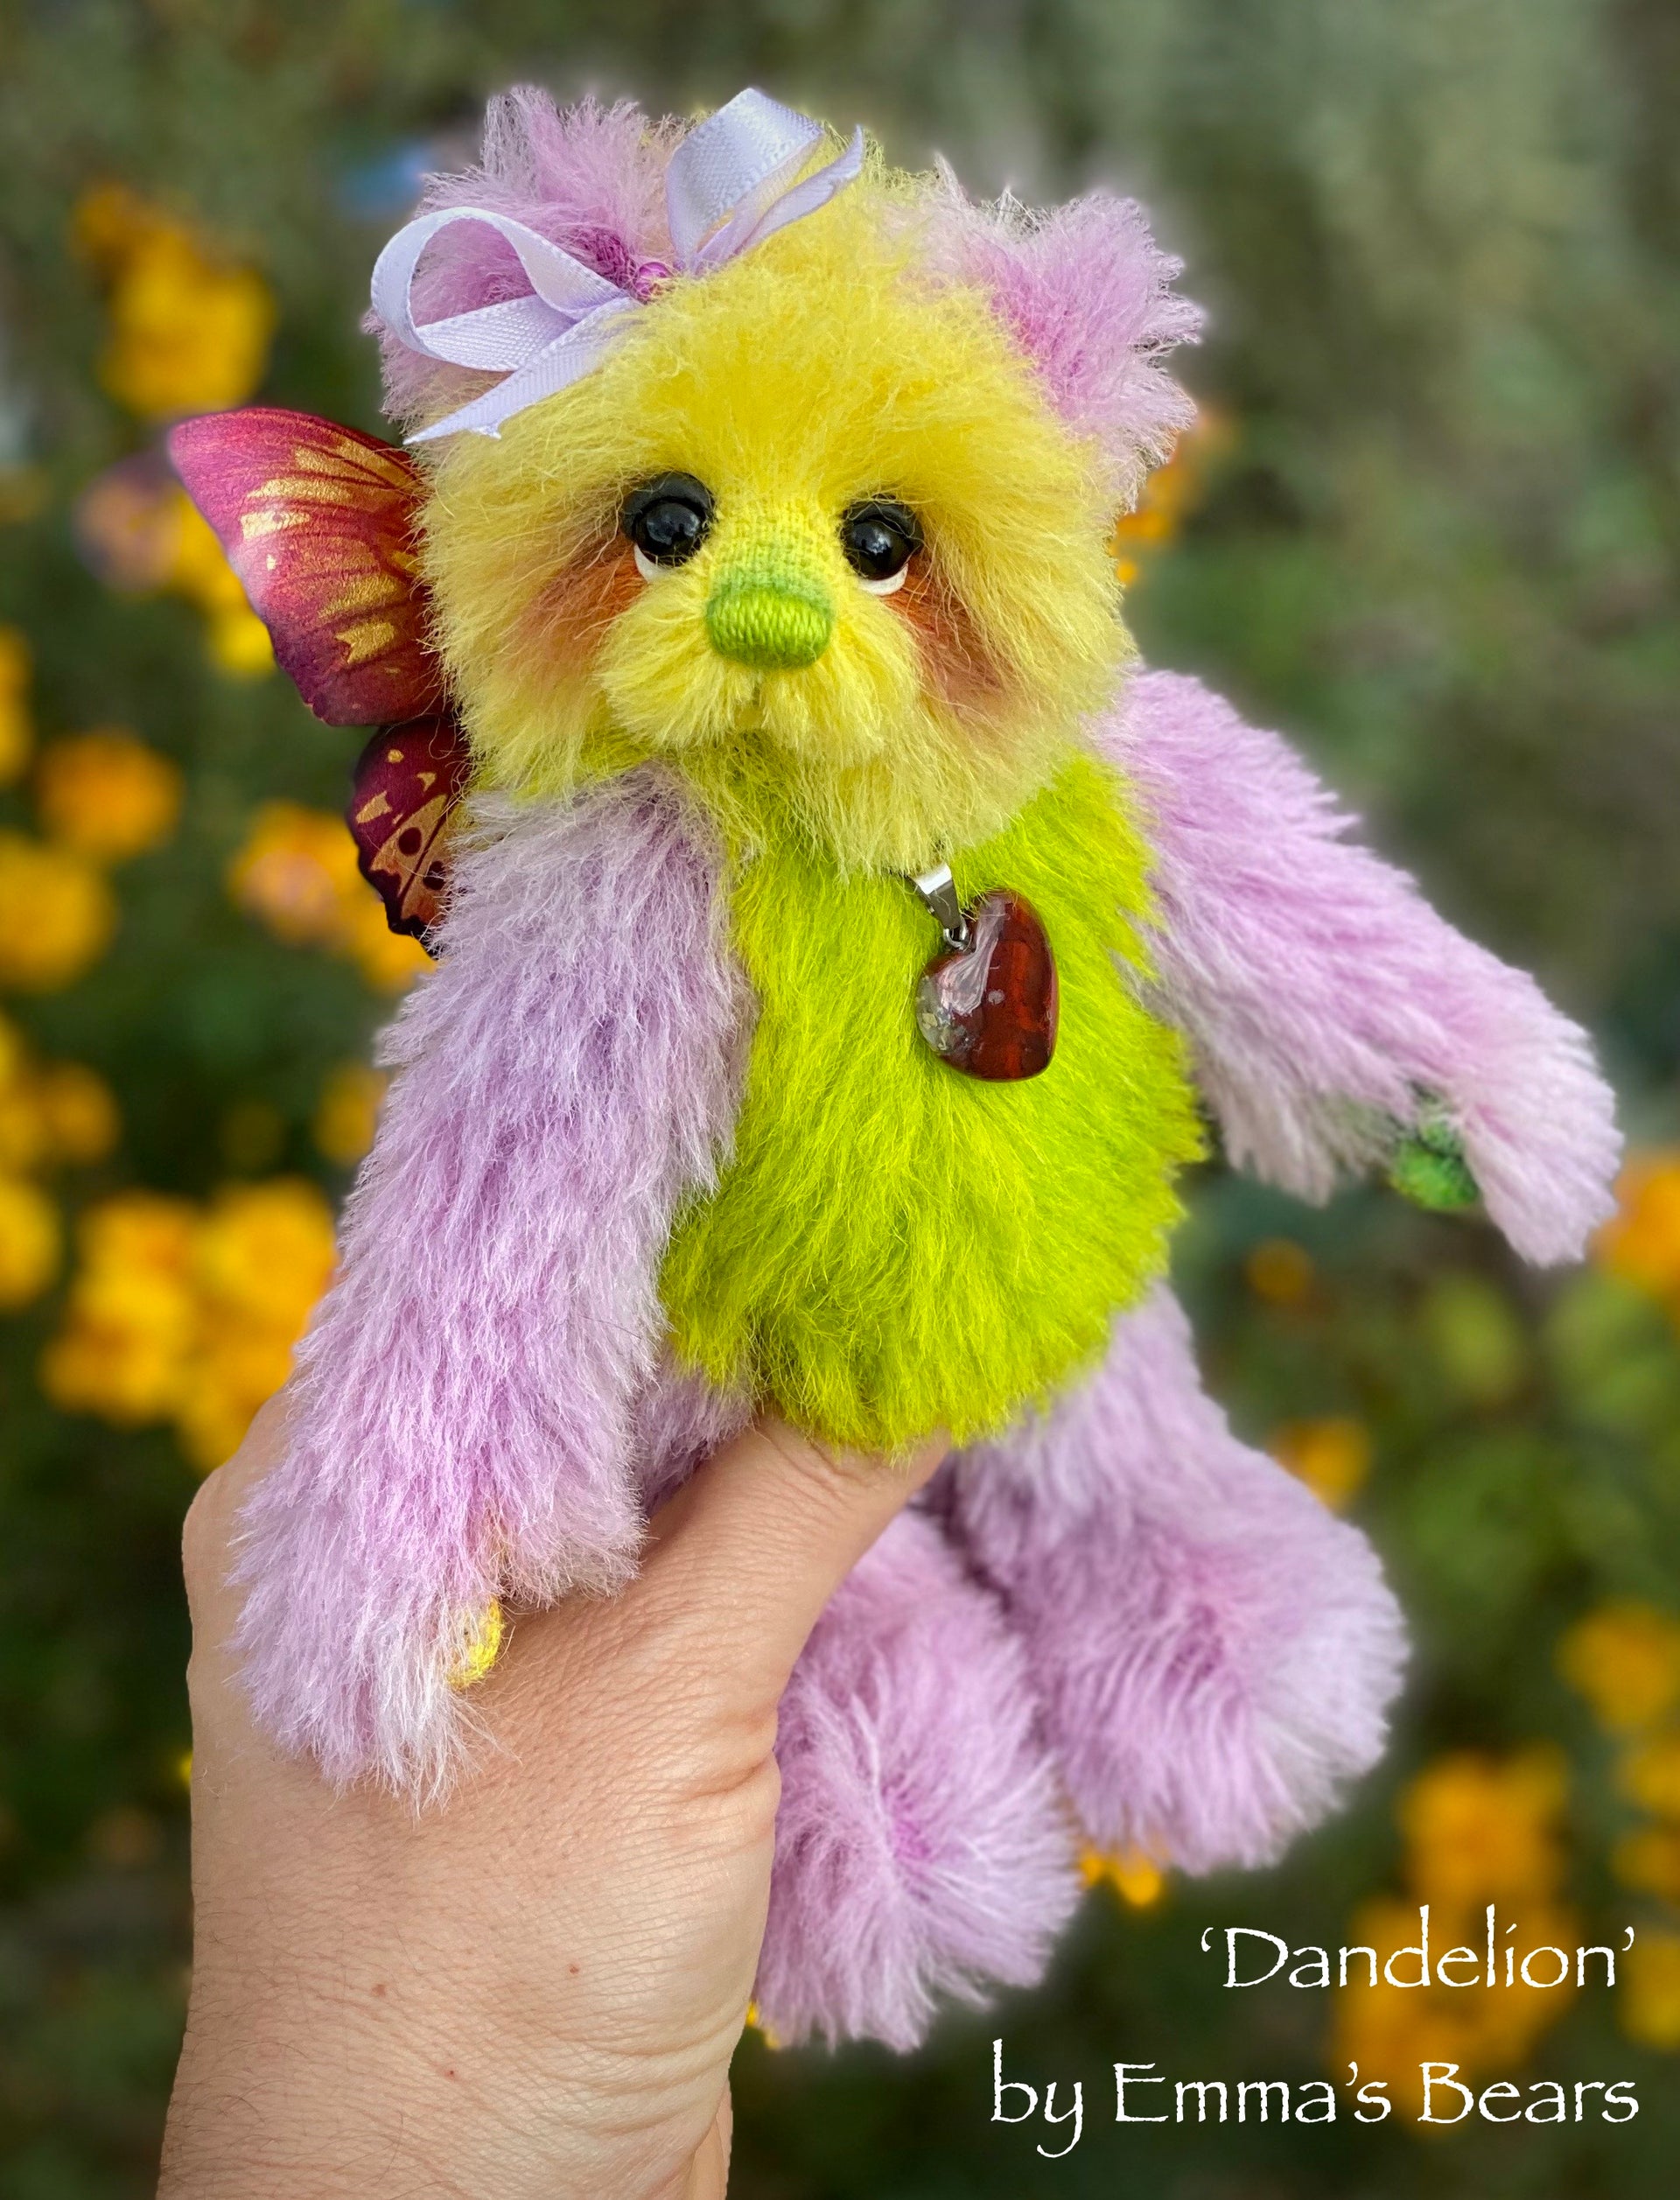 Dandelion - 7" Rainbow Alpaca Artist Bear by Emma's Bears - OOAK